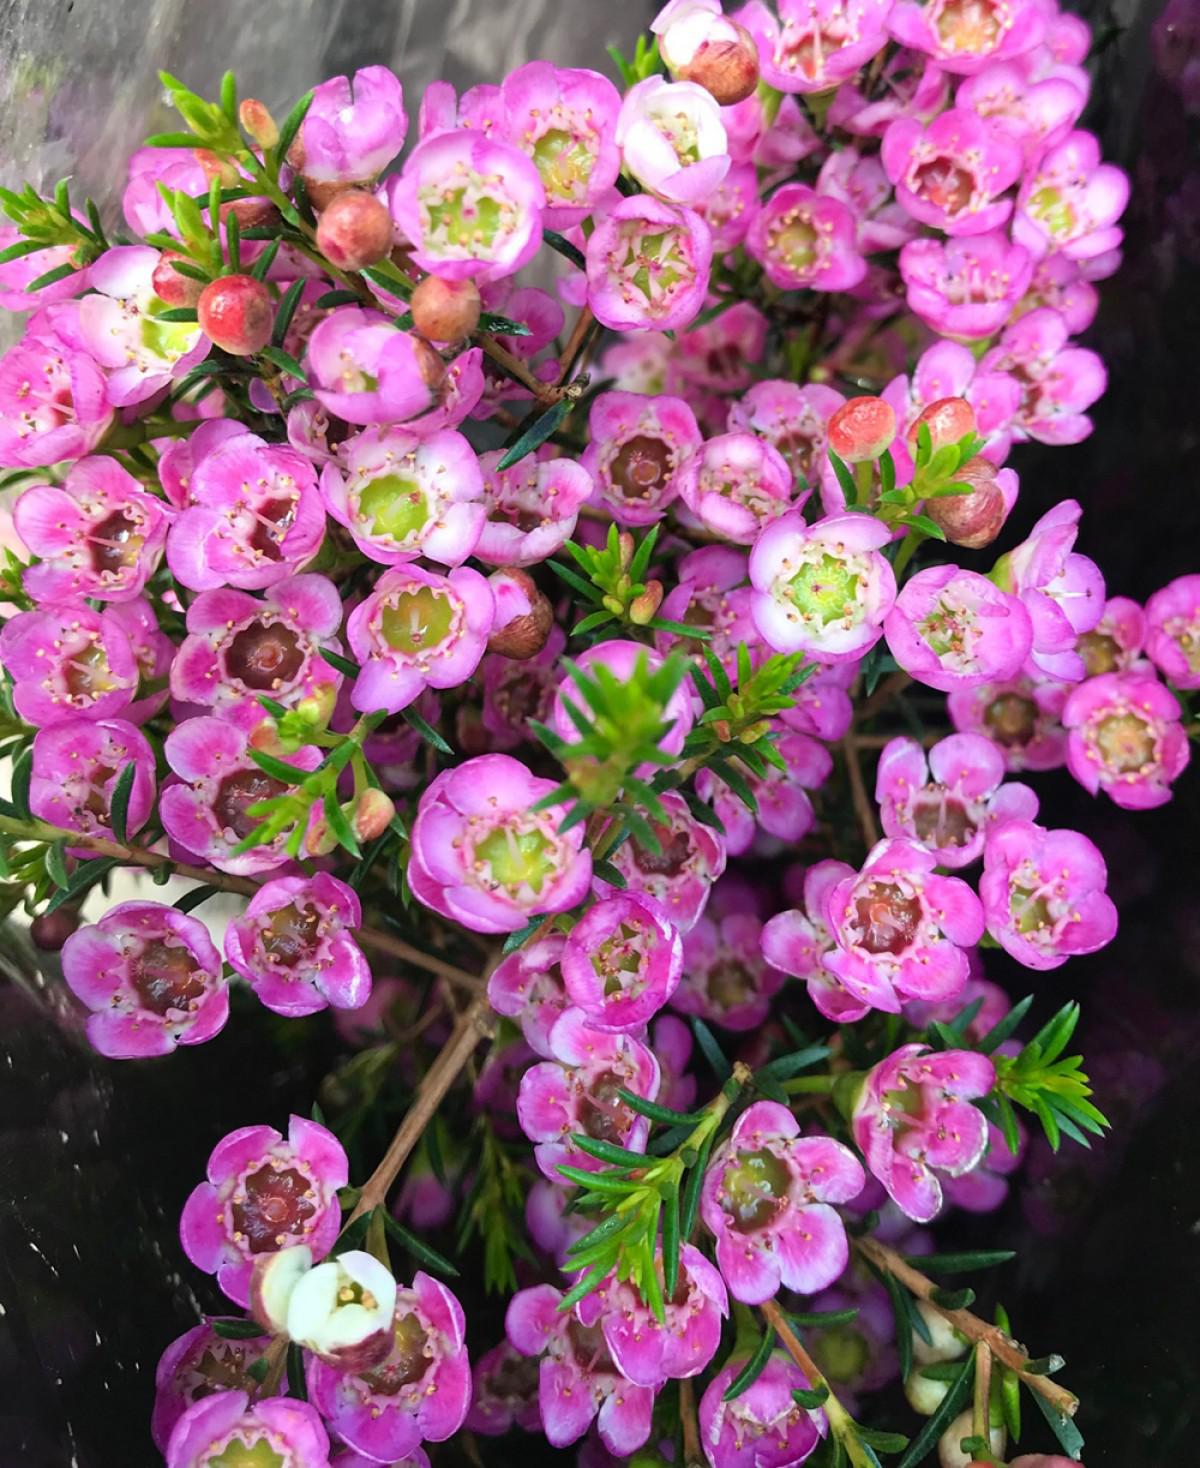 Thanh liễu loài hoa nhỏ xinh, nhiều sắc màu khuynh đảo thị trường hoa dịp Giáng sinh - 6